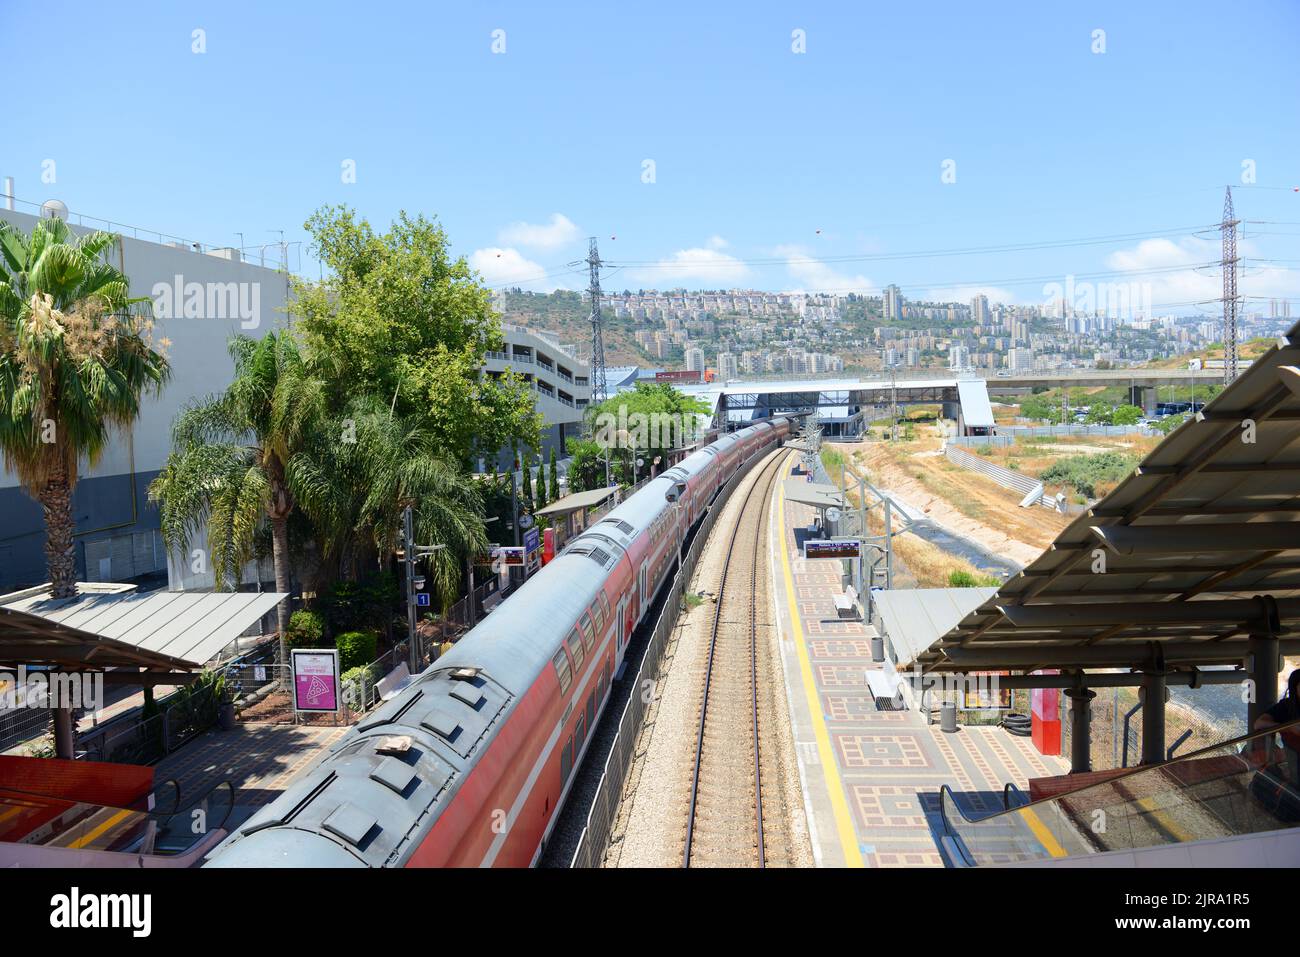 HaMifrats Central Station/Kav HaHof in Haifa, Israel. Stock Photo